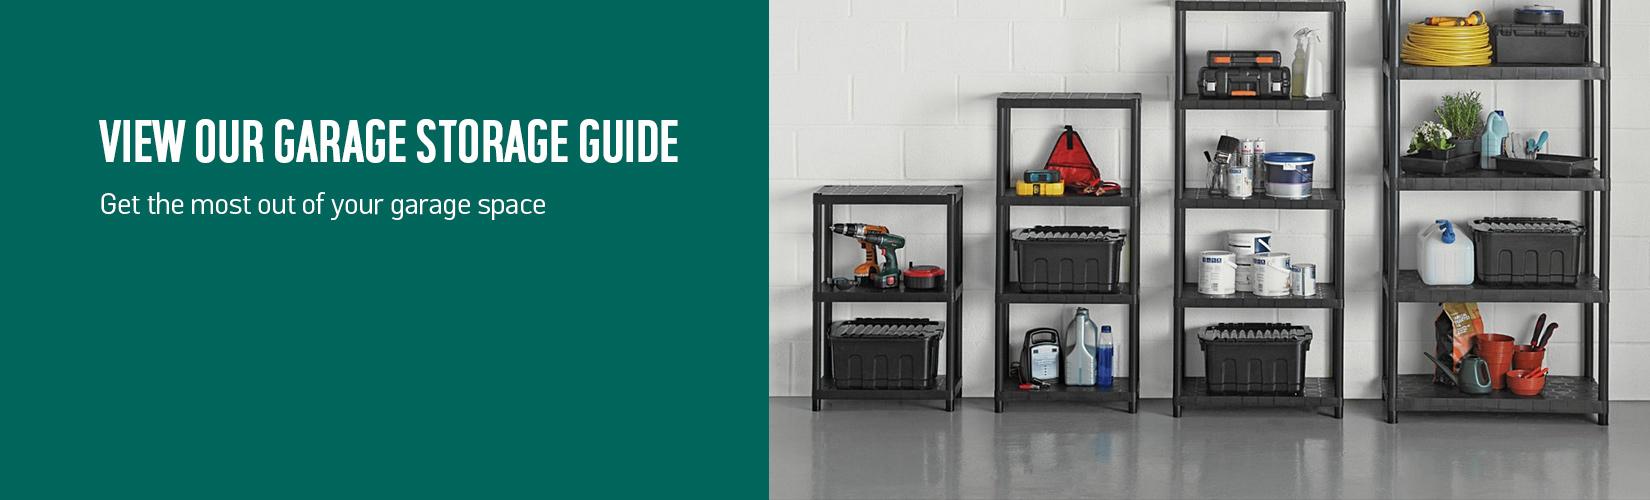 Garage storage guide.